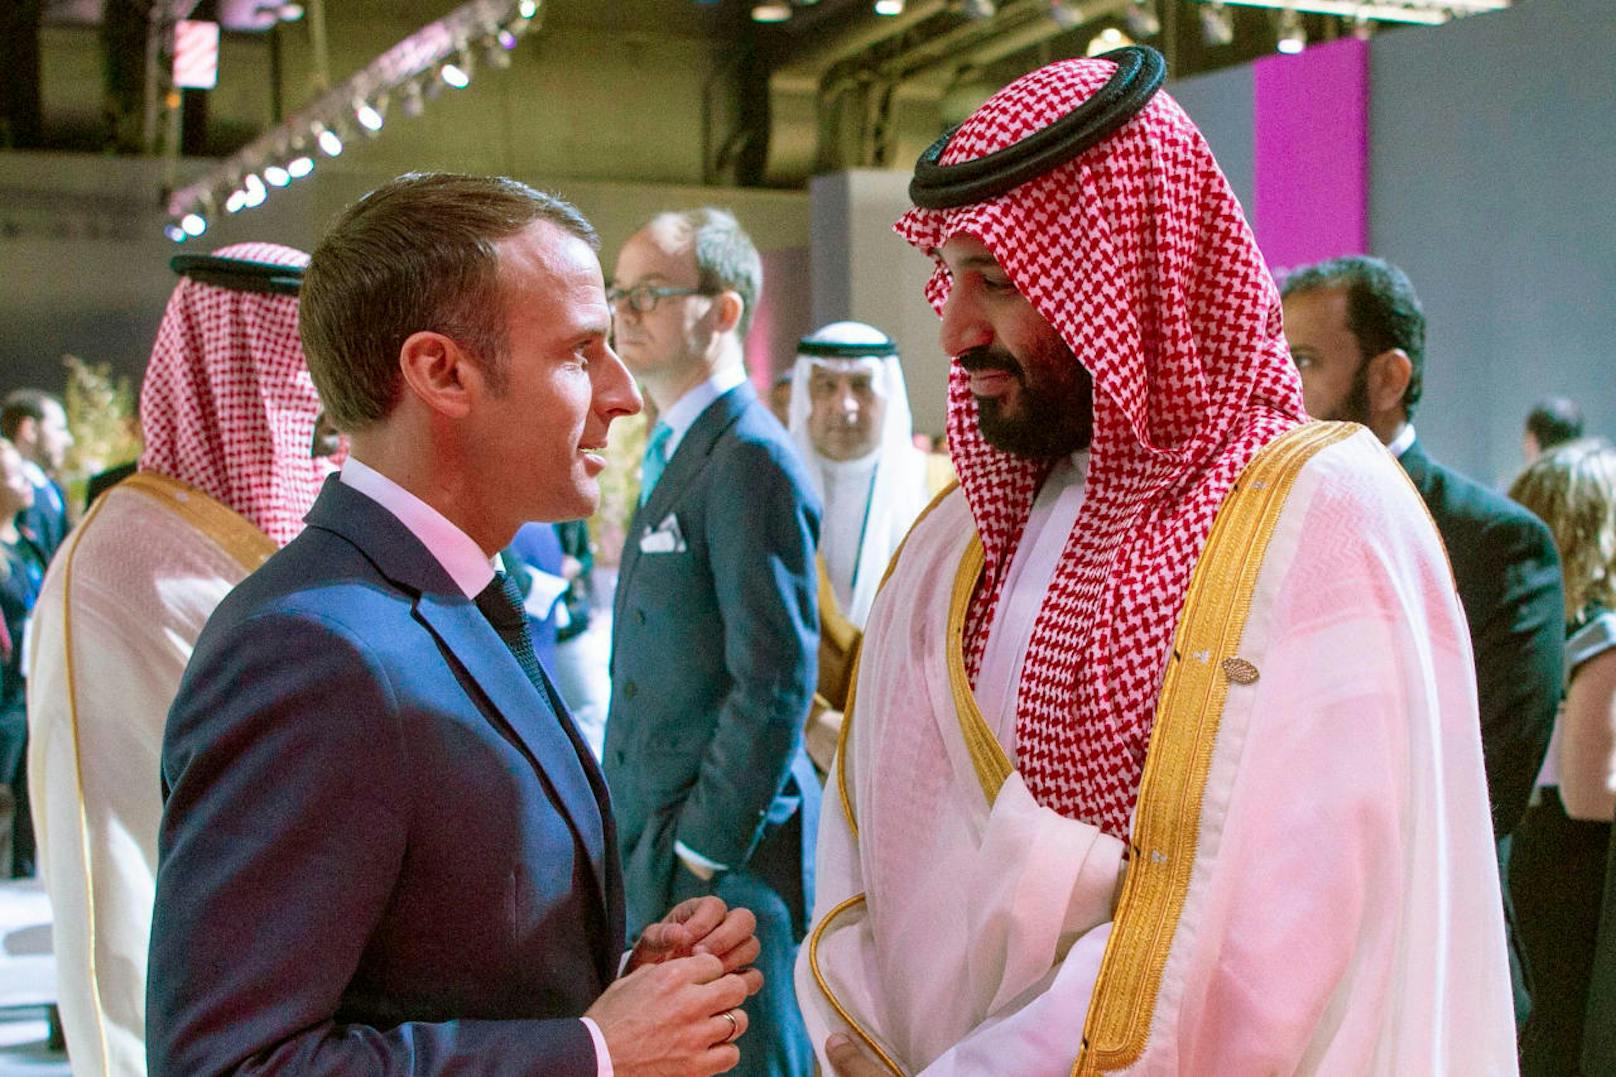 Frankreichs Präsident Emmanuel Macron fiel vor allem durch ein, auf Video aufgezeichnetes, bilaterales Gespräch mit dem saudischen Kronprinzen Mohammed Bin Salman auf: <a href="https://www.heute.at/welt/news/story/G20-Argentinien-2018-Emmanuel-Macron-macht-Saudi-Kronprinz-Mohammed-bin-Salman-Dampf-Video-49154849" target="_blank">"Sie hören mir nie zu!"</a>